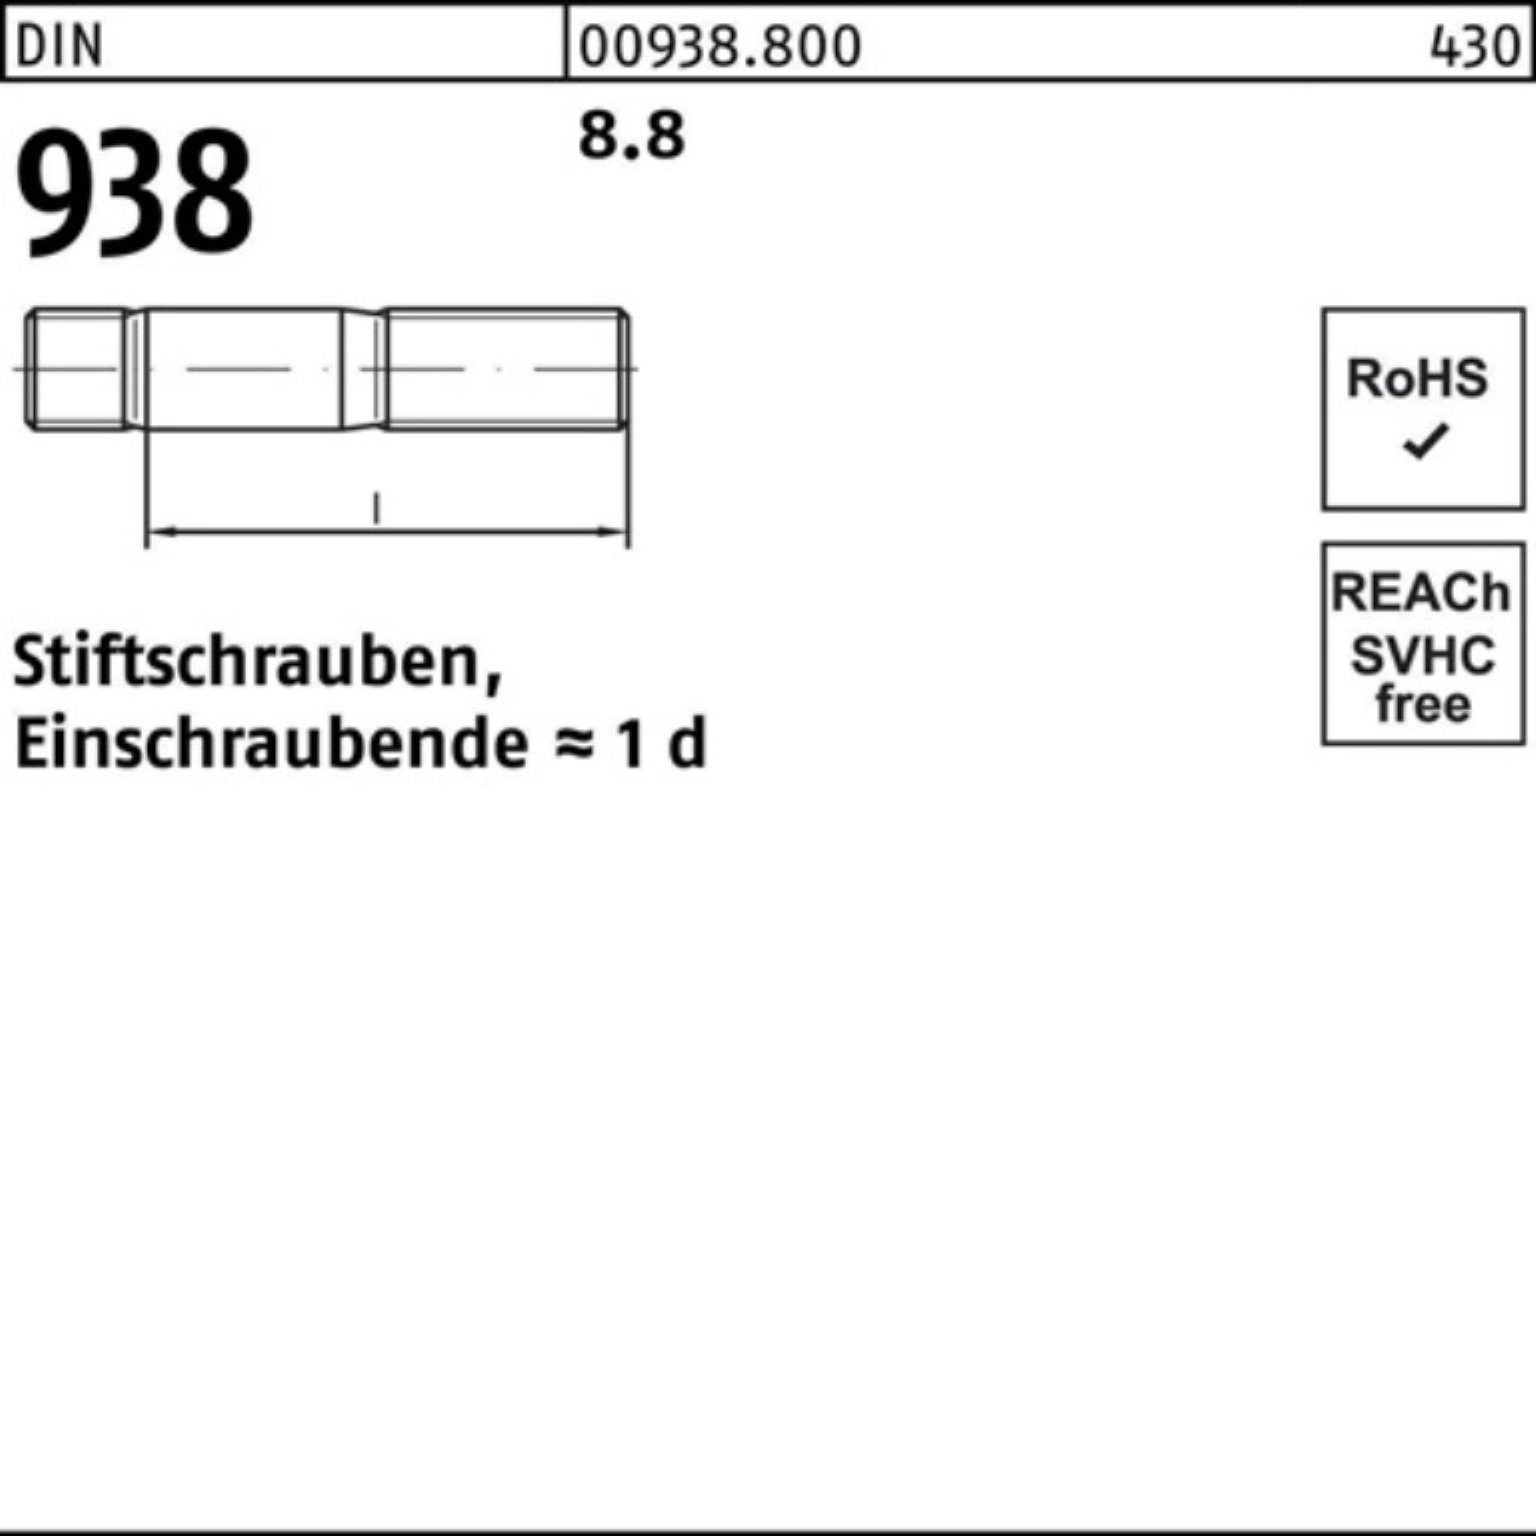 Pack 8.8 100er DIN DIN 50 Stück Stiftschraube Reyher 938 M8x 938 Stiftschraube 50 Stif 8.8